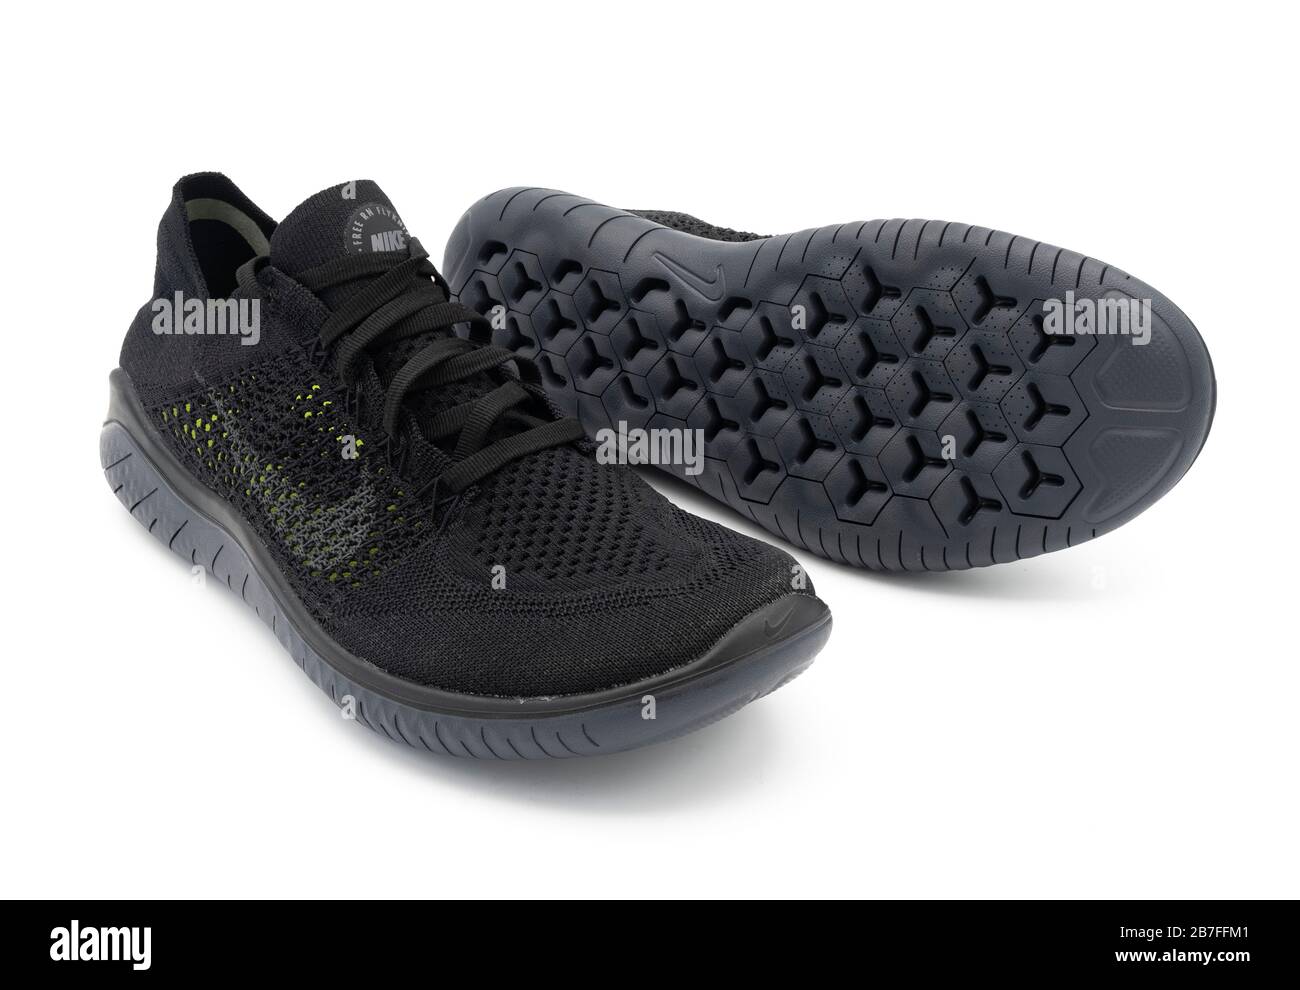 Par de zapatillas de running de verano ventiladas Free RN Flyknit negras sobre fondo blanco Fotografía stock -